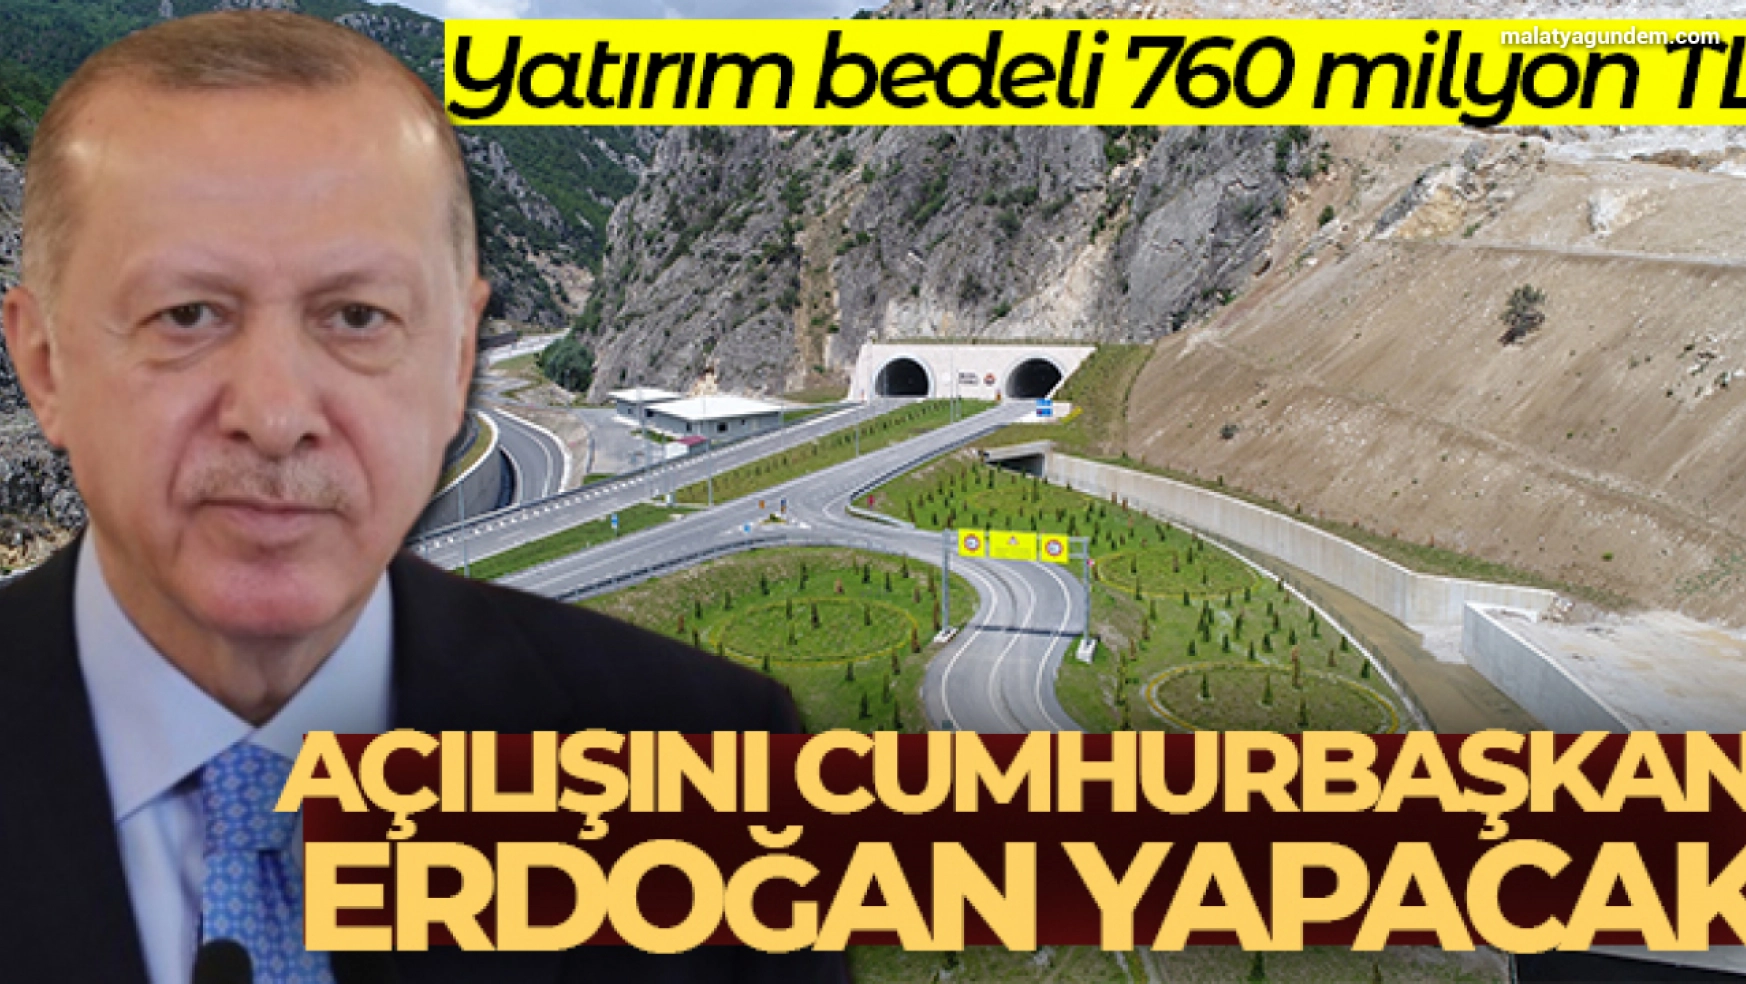 Açılışını Cumhurbaşkanı Erdoğan yapacak: Yatırım bedeli 760 milyon TL